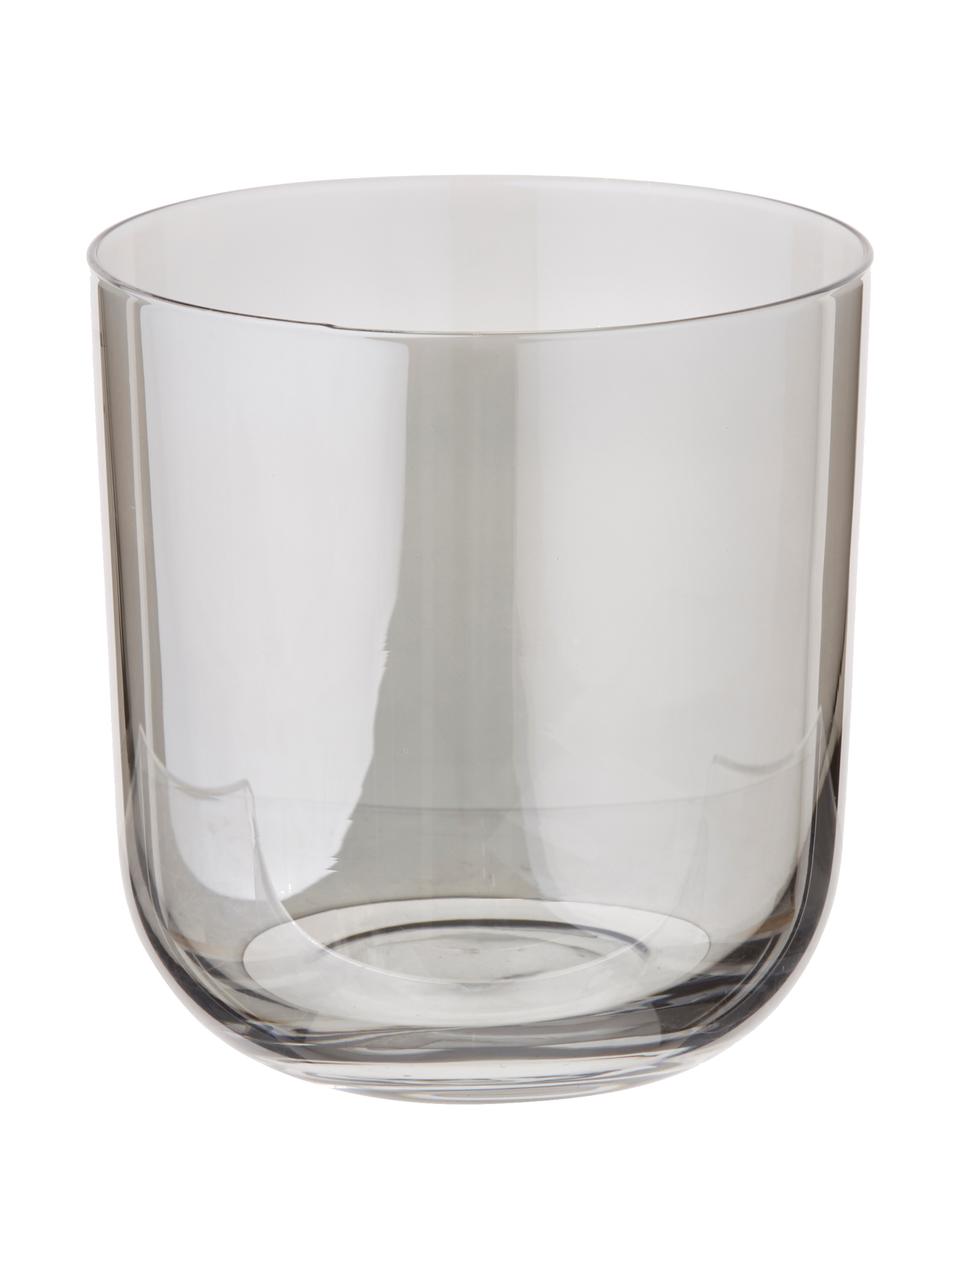 Handbemalte Wassergläser Polka in Braun- und Grautönen, 4er-Set, Glas, Gelb, Kastanienbraun, Grau, Braun, Ø 9 x H 9 cm, 420 ml